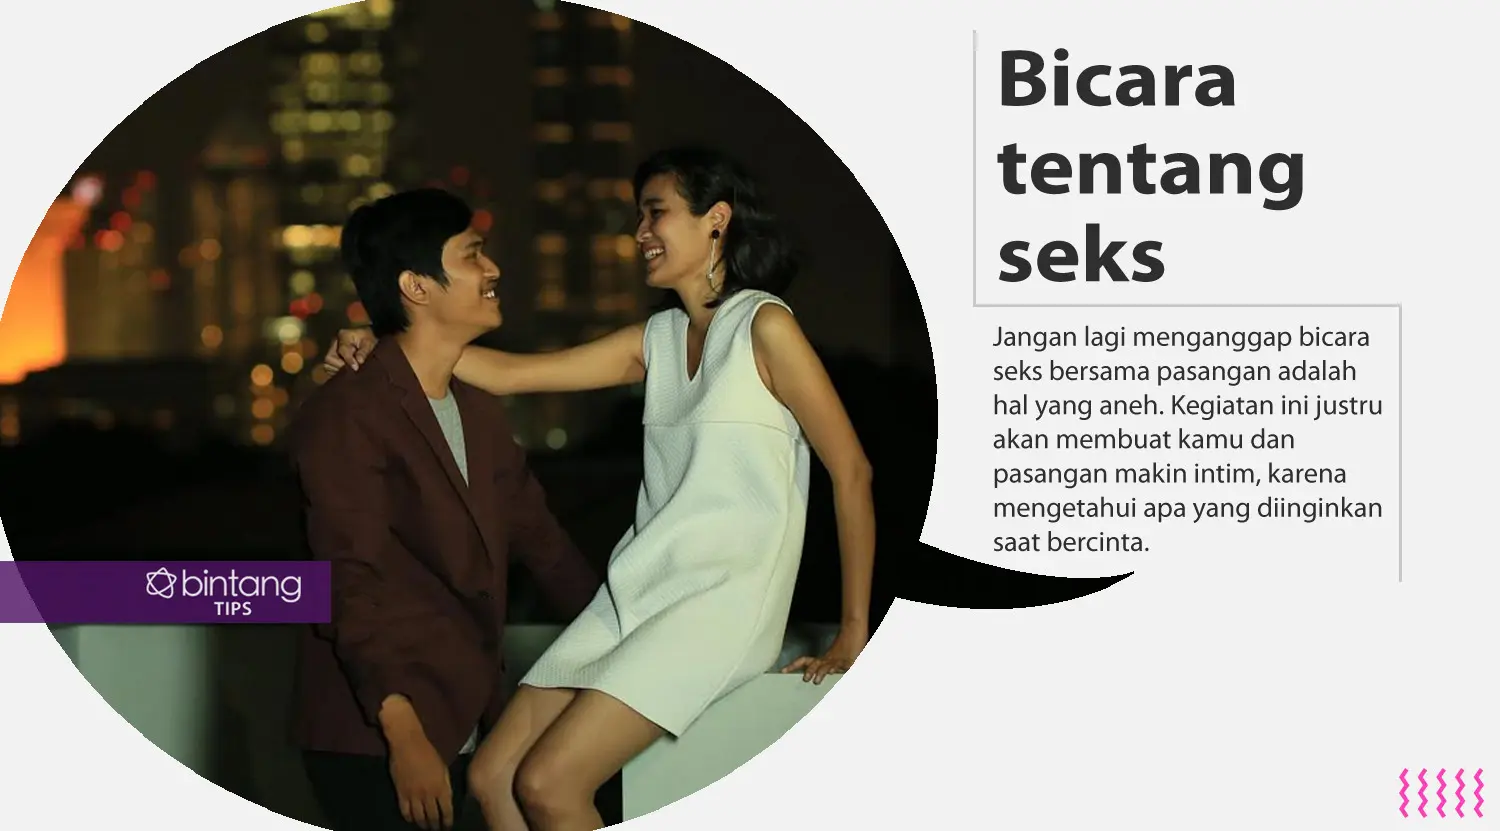 Trik biar kamu dan pasangan makin intim di ranjang. (Foto: Bambang E. Ros, Digital Imaging: Nurman Abdul Hakim/Bintang.com)